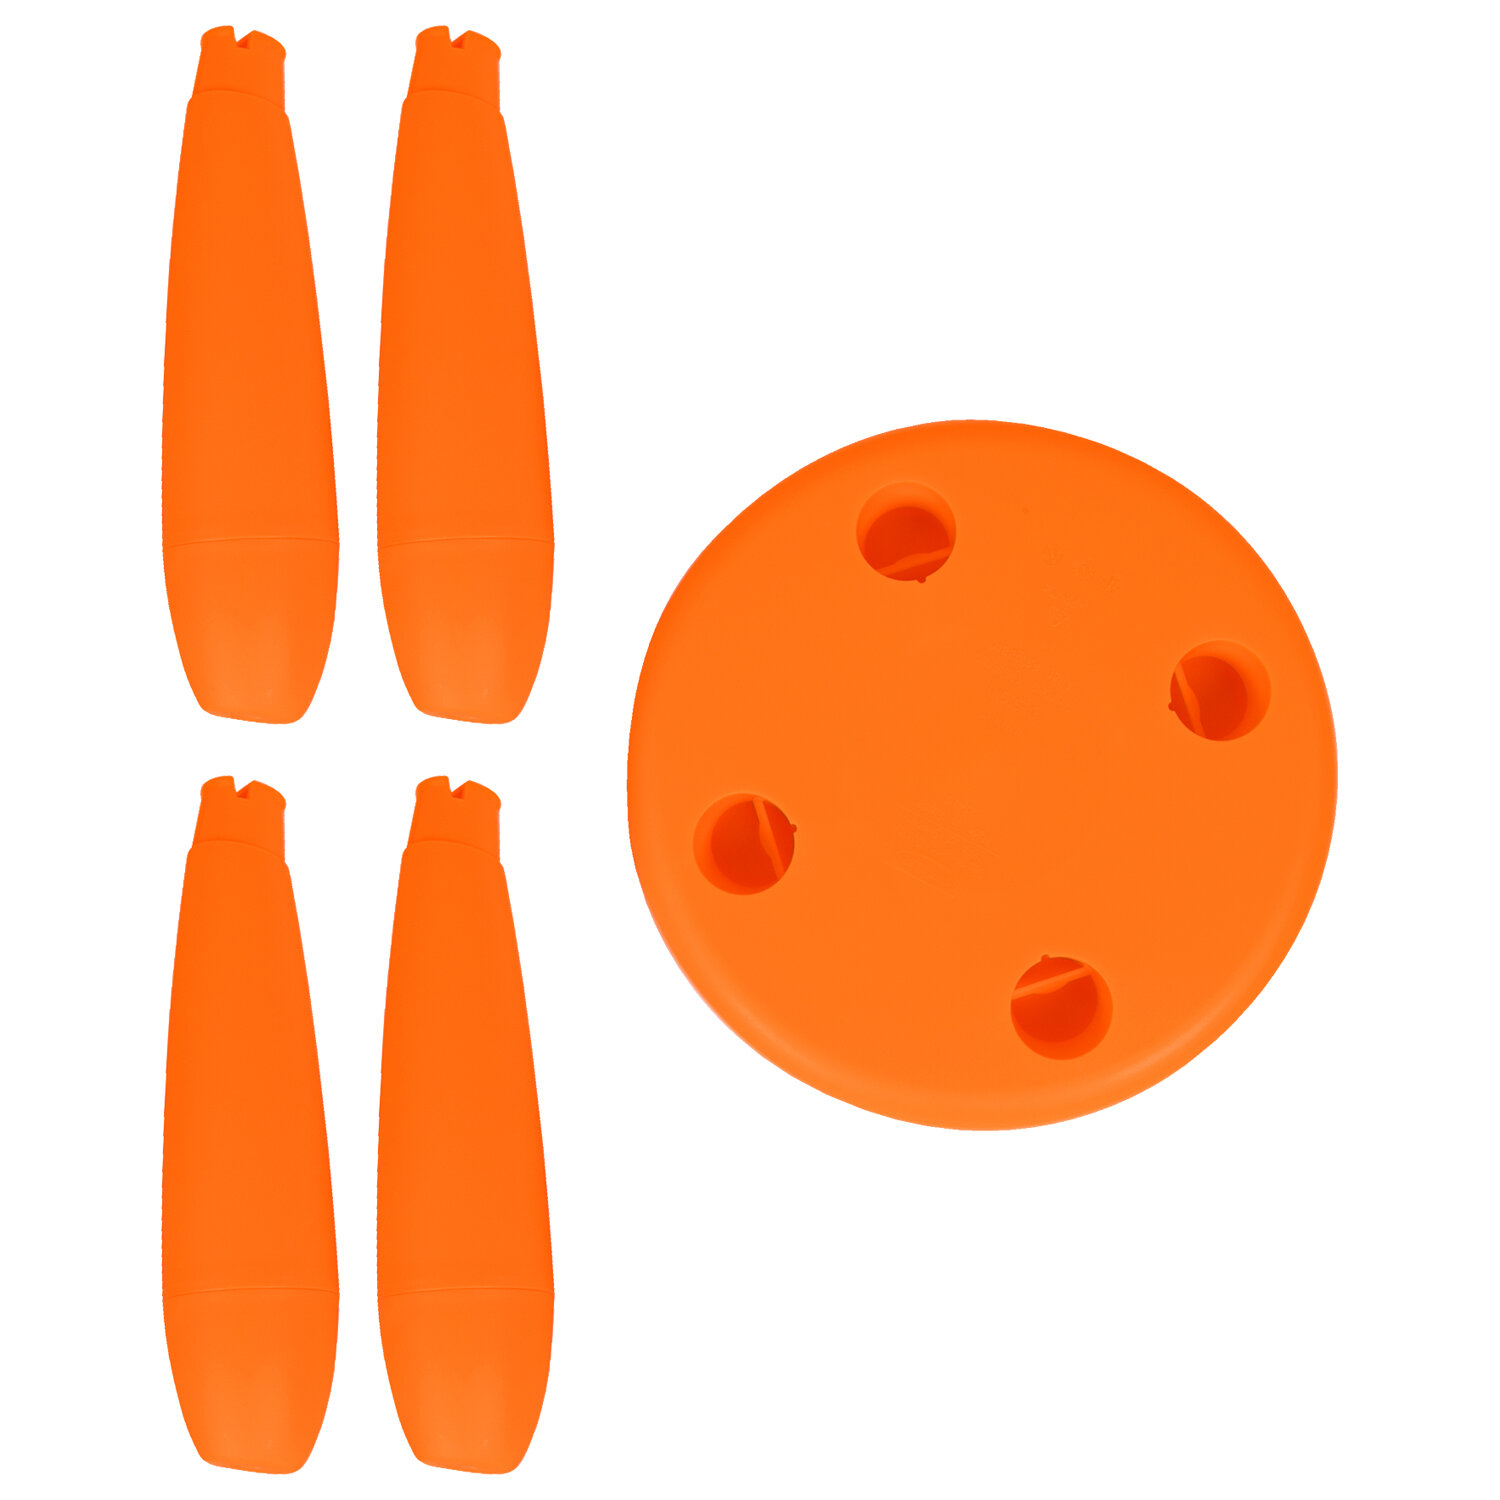 Табурет детский МАМОНТ оранжевый, от 2 до 7 лет, безвредный пластик,